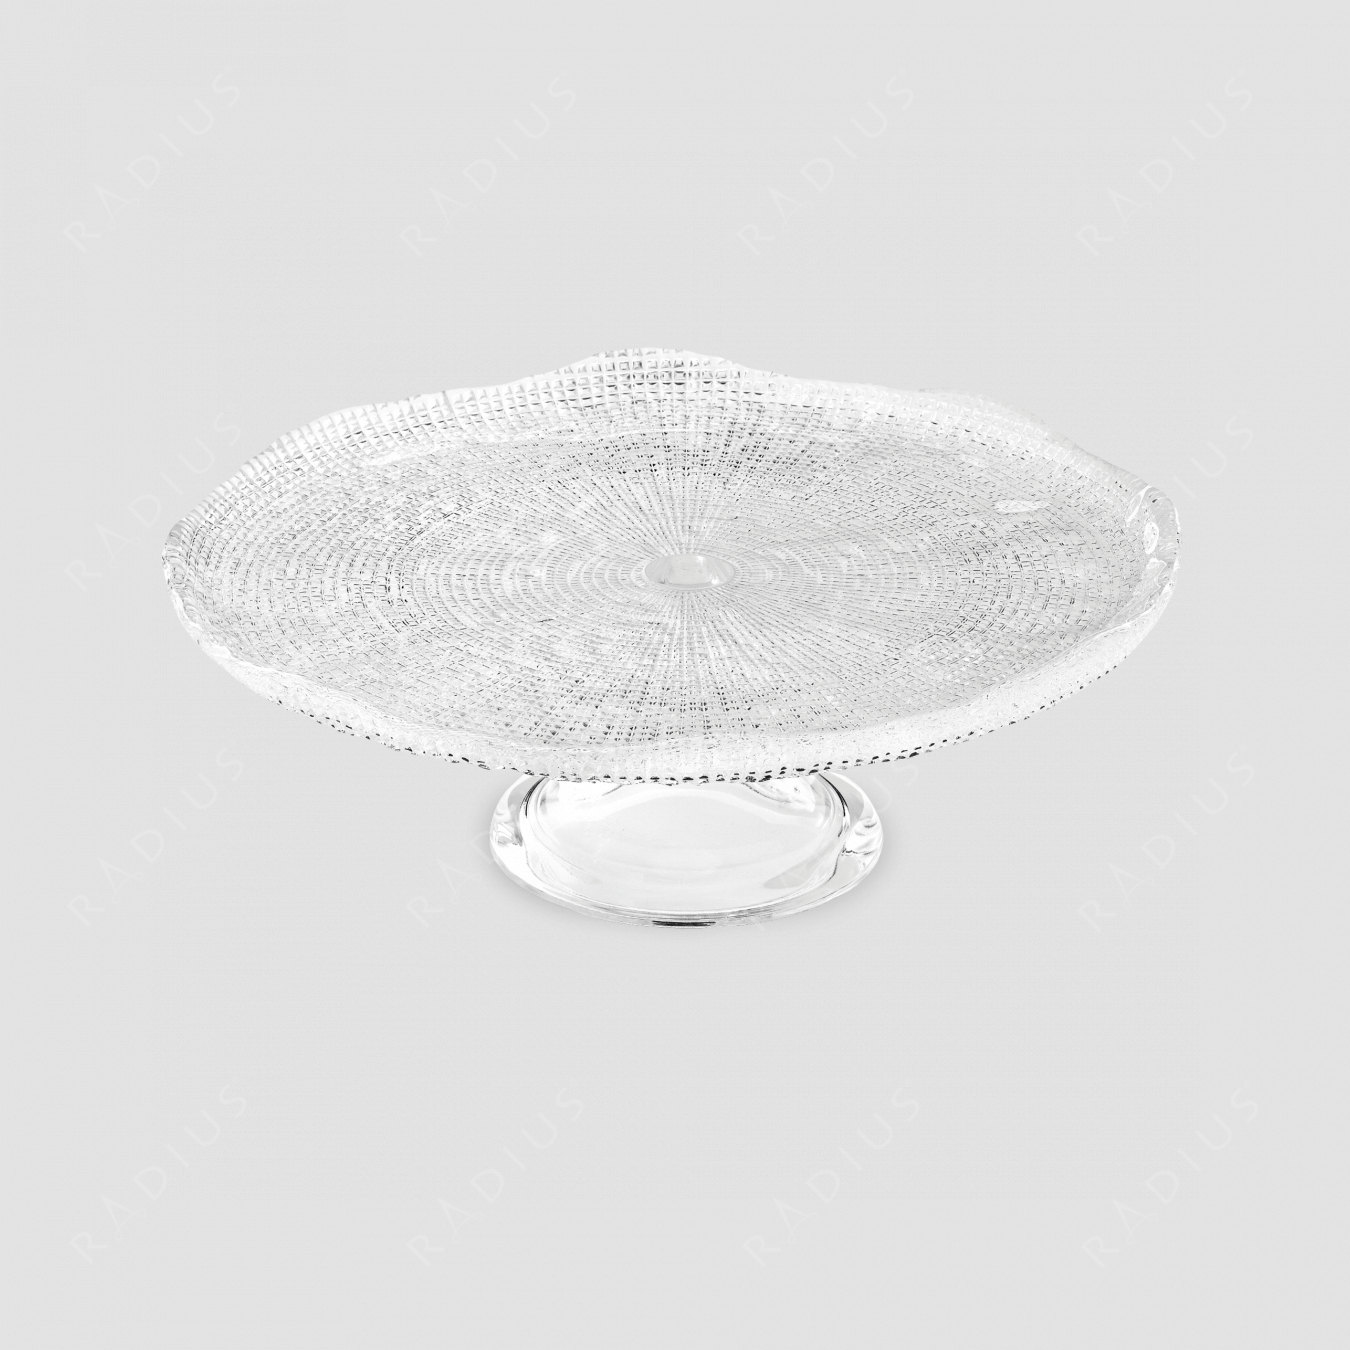 Блюдо круглое для торта на ножке, диаметр: 32 см, высота: 11,5 см, материал: стекло, серия Diamante, IVV (Italy), Италия